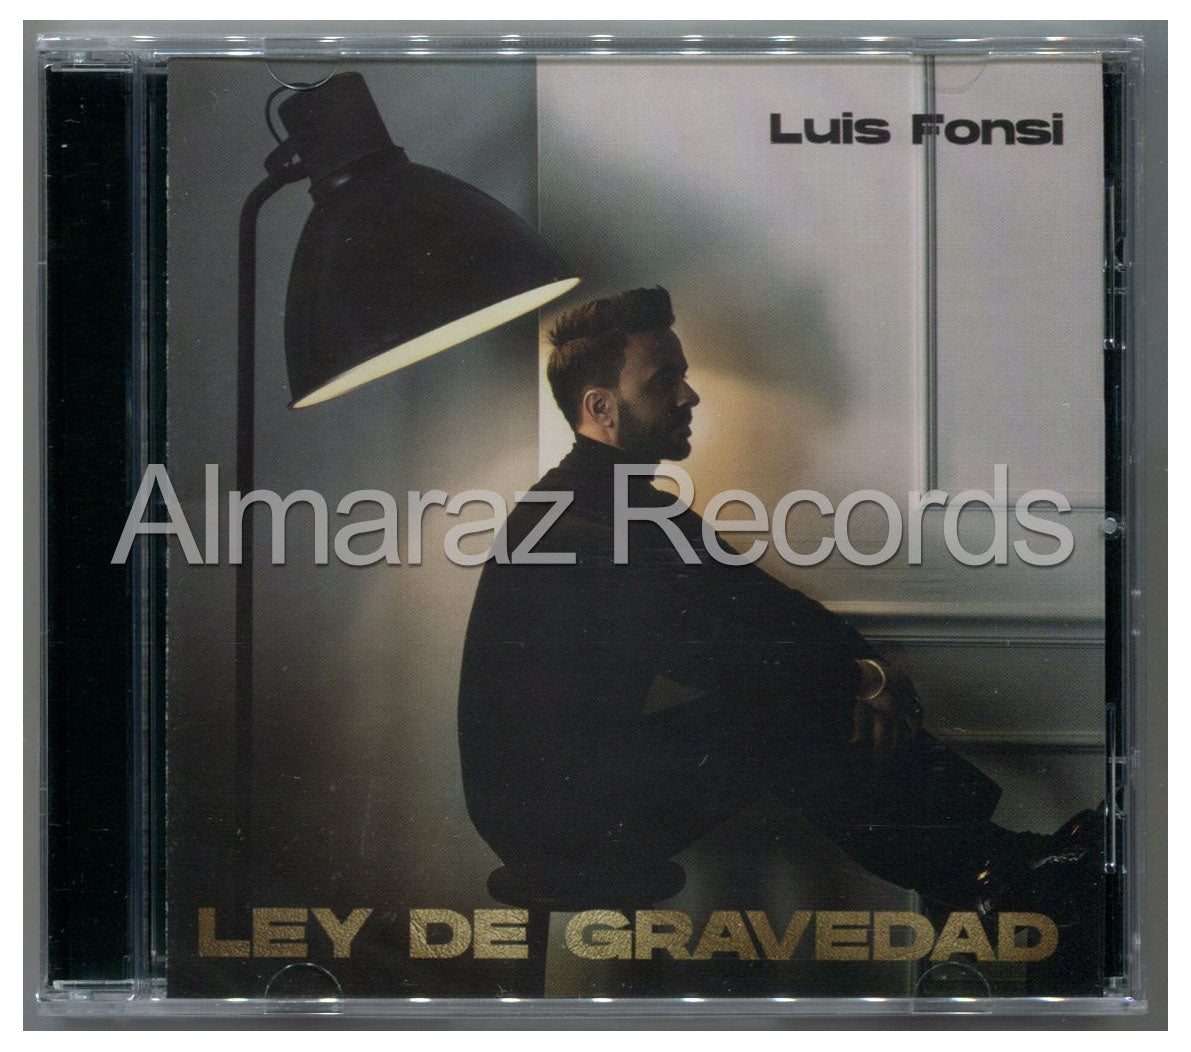 Luis Fonsi Luz De Gravedad CD